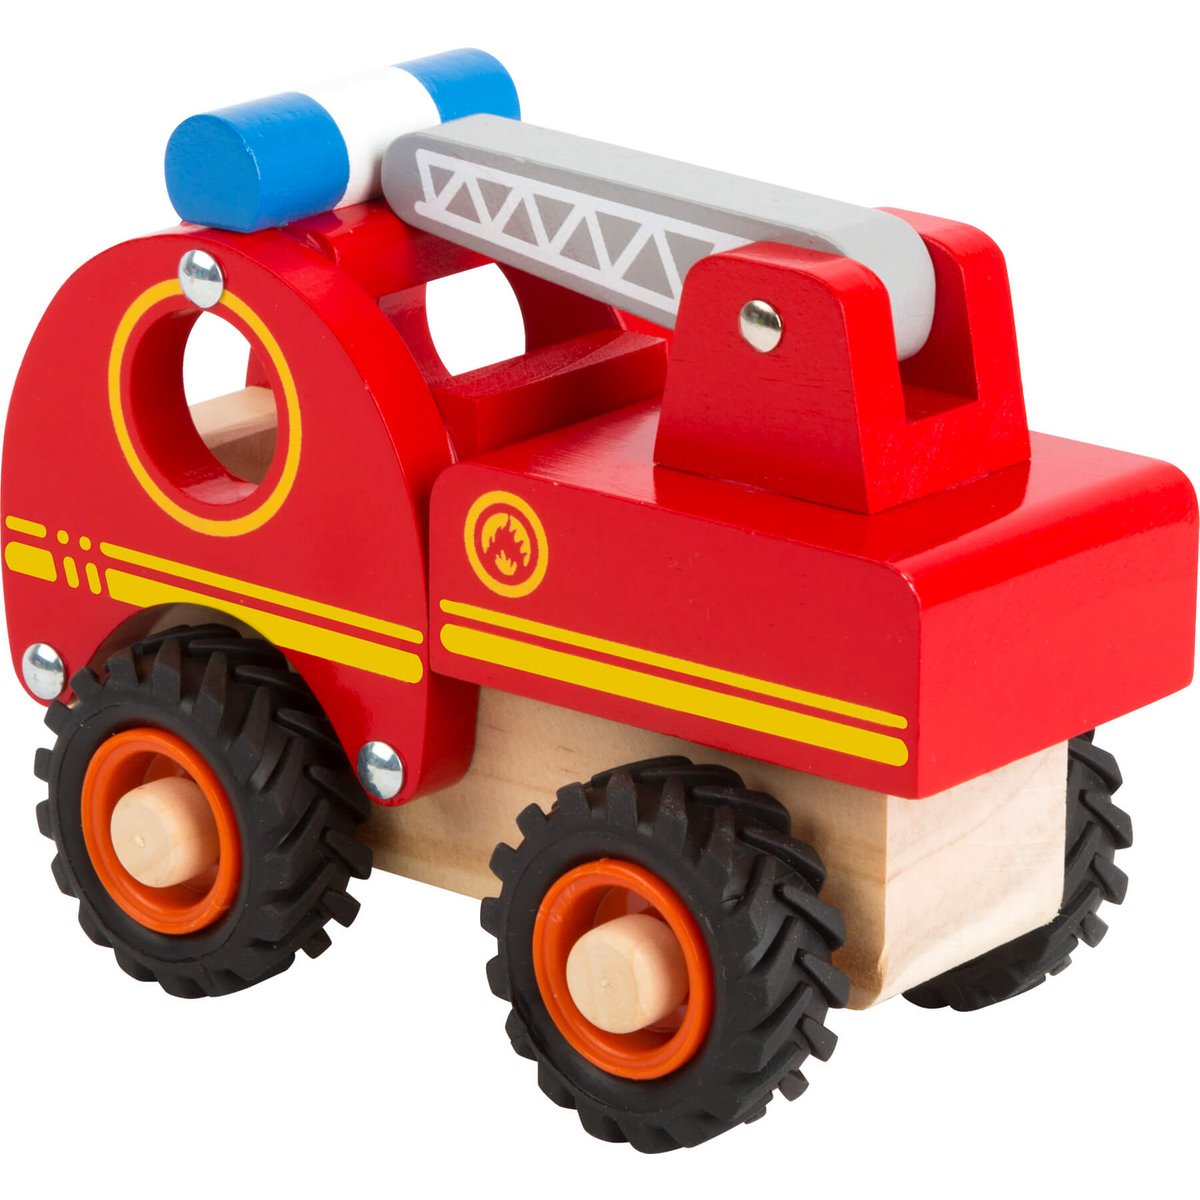 Rotes Feuerwehrauto aus 100% FSC-zertifiziertem Holz mit beweglicher Leiter